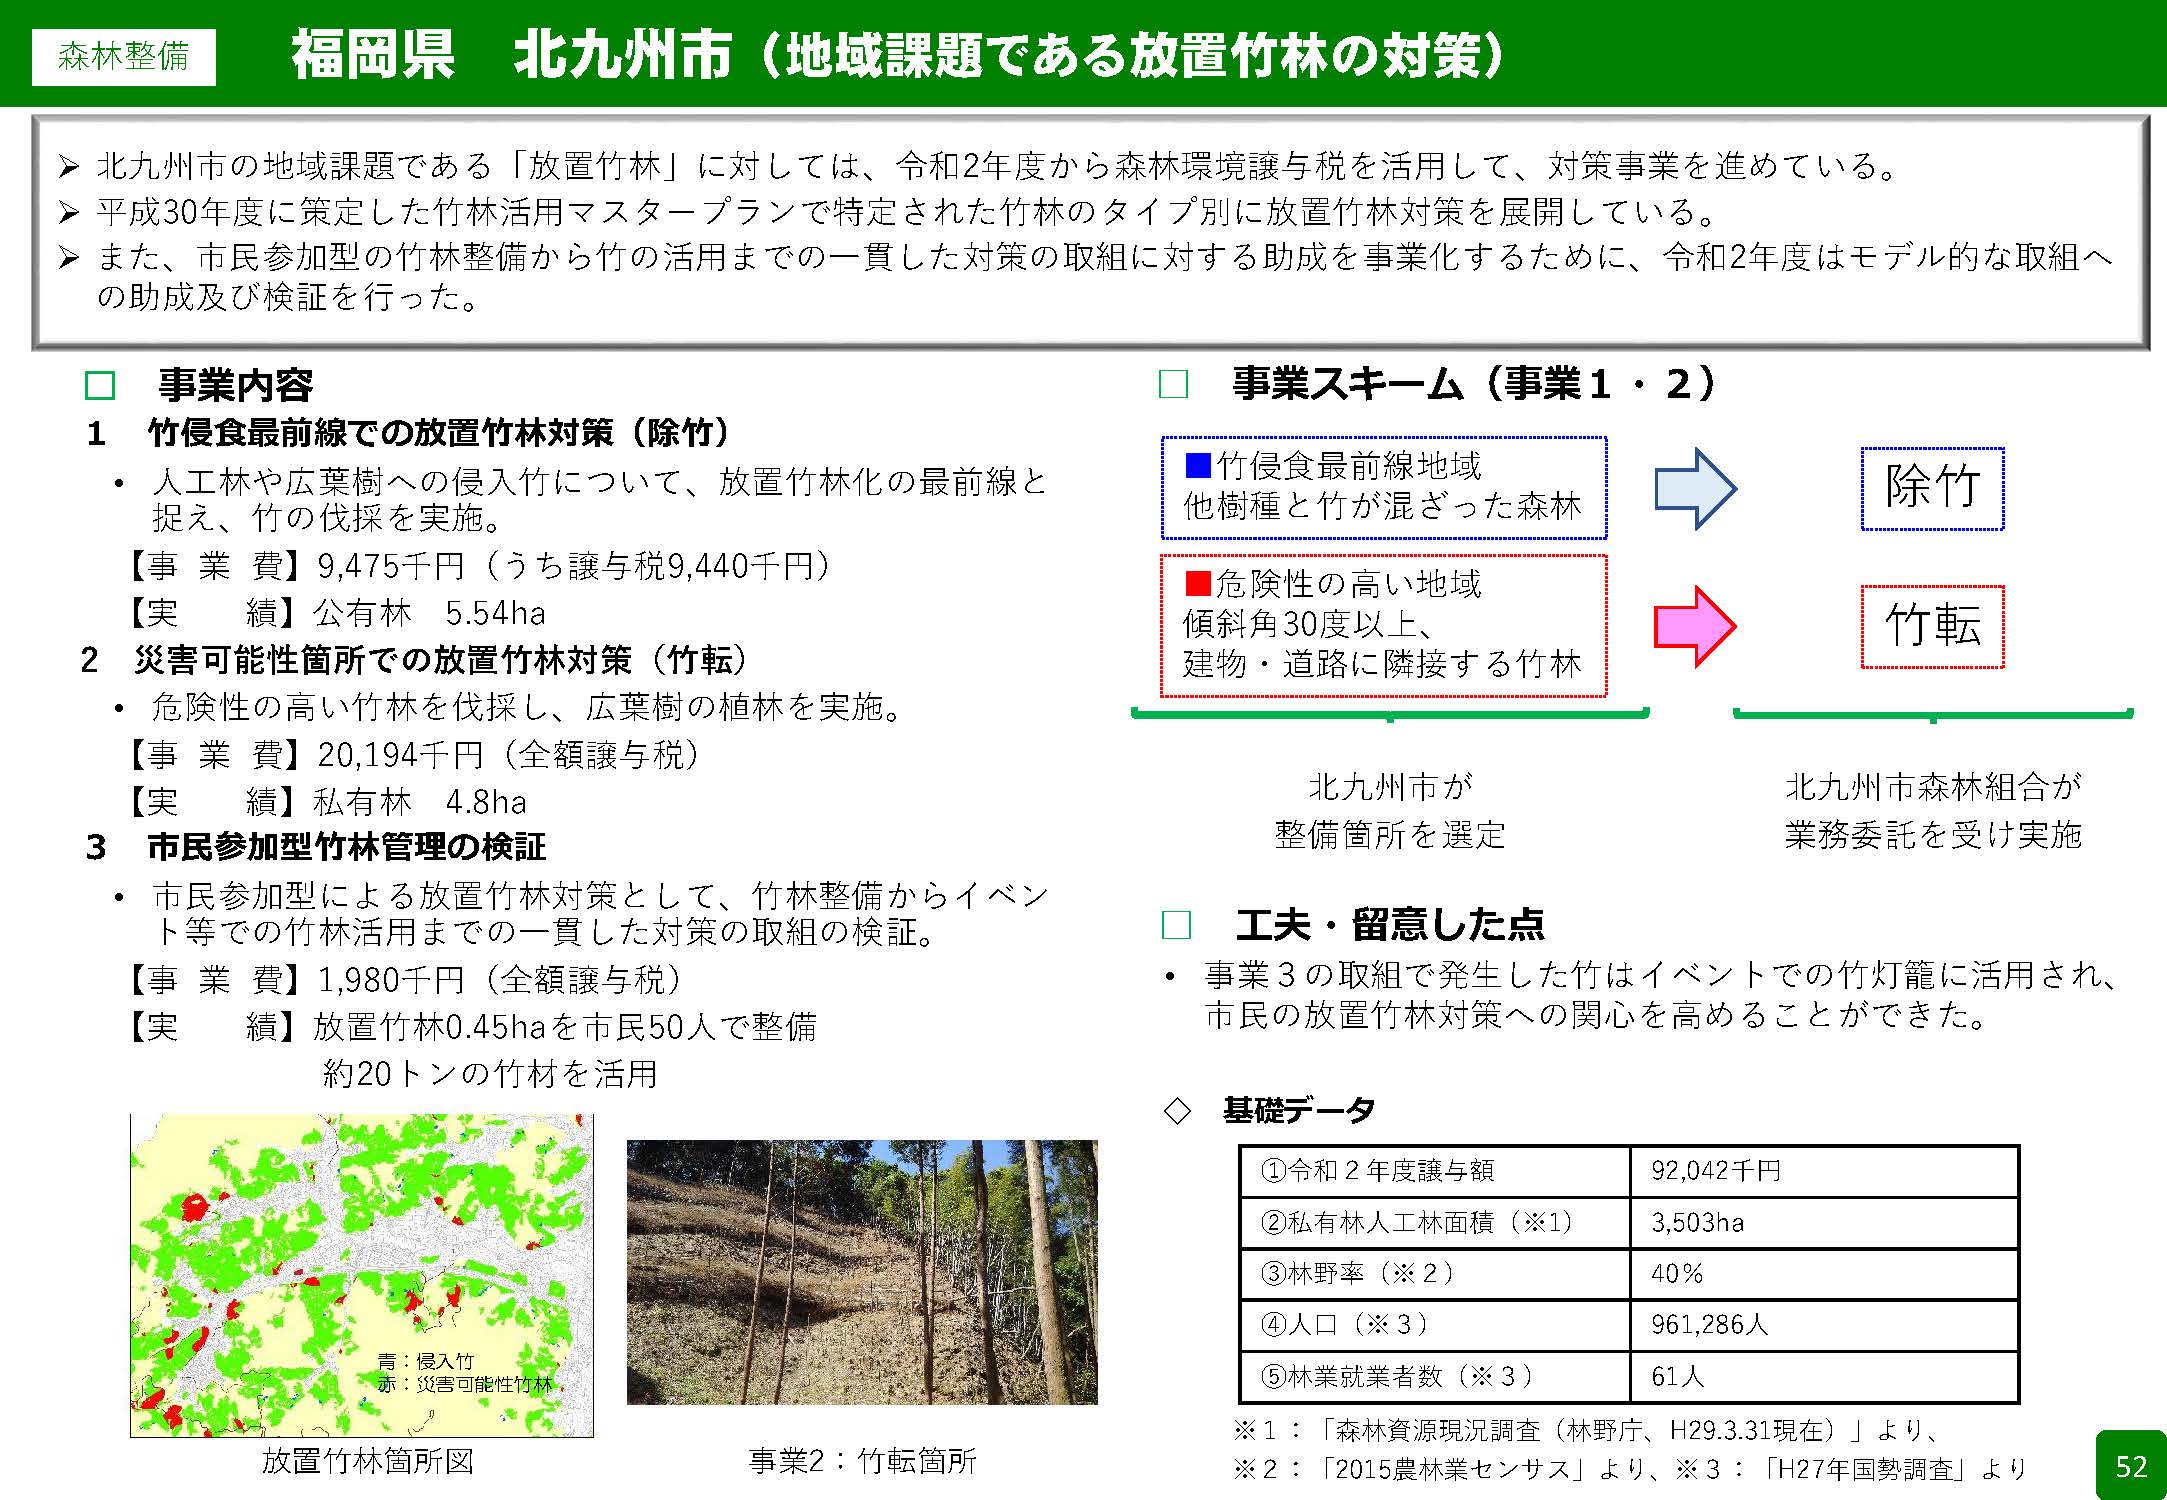 森林環境譲与税を活用した自治体の取組の紹介 Vol.5 福岡県北九州市